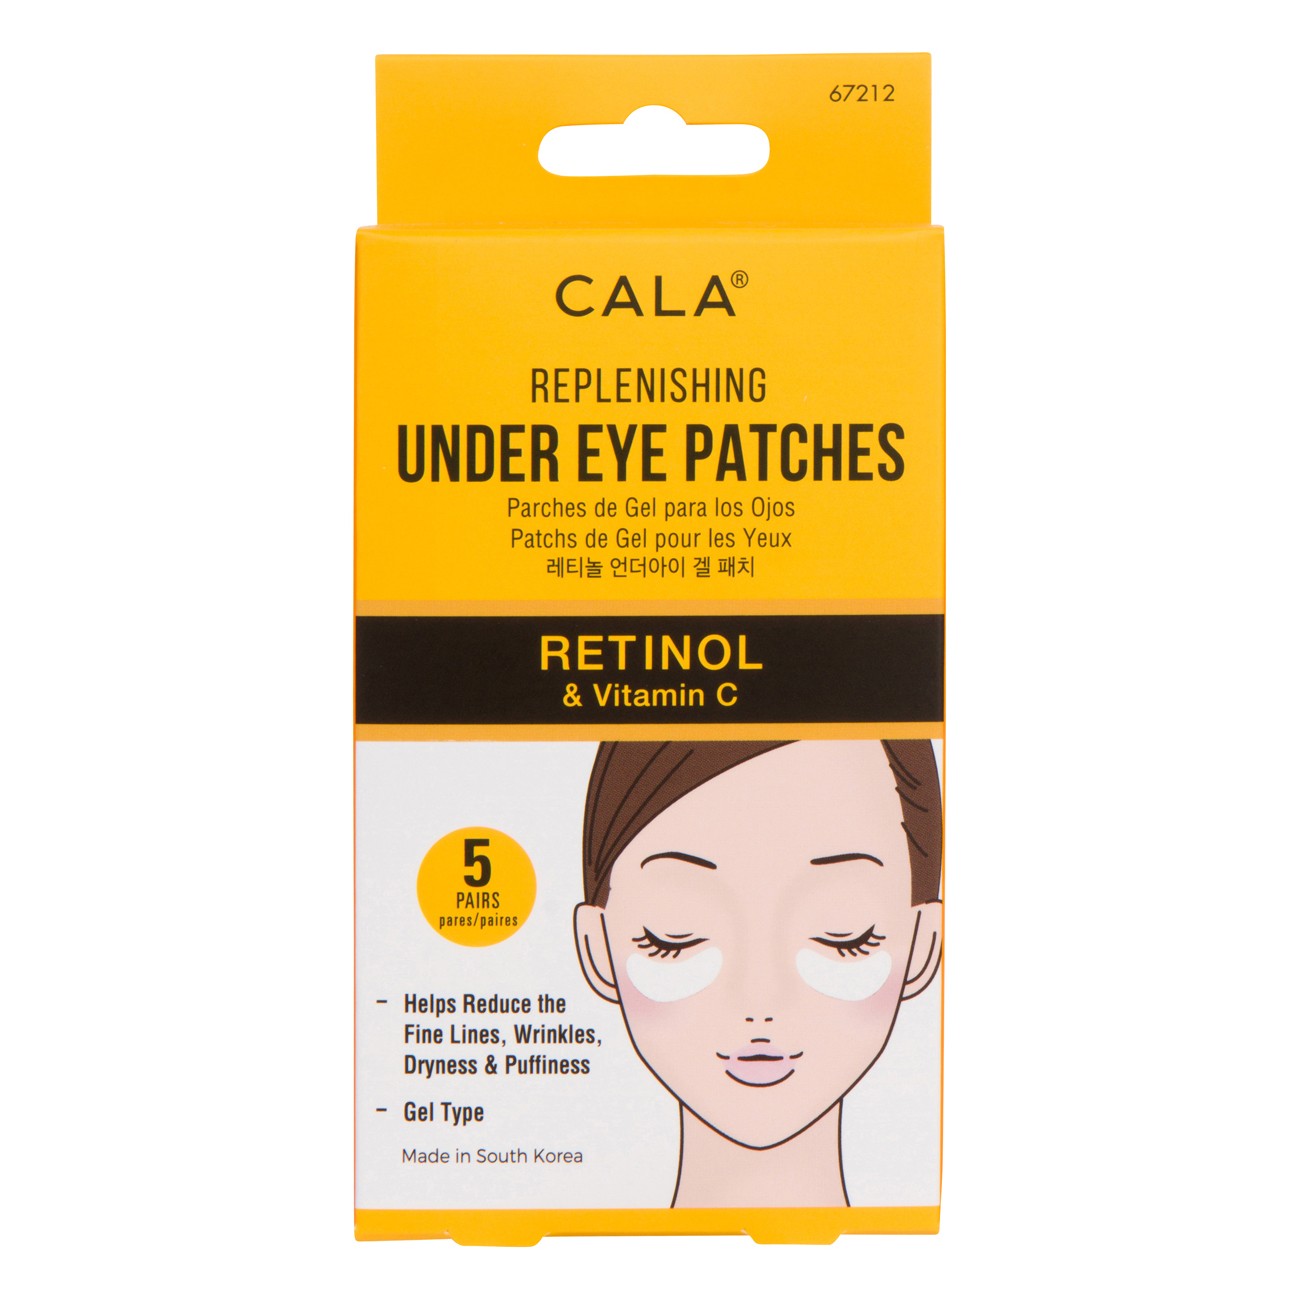 Replenishing Under Eye Patches - Retinol & Vitamin C (5 Pairs)